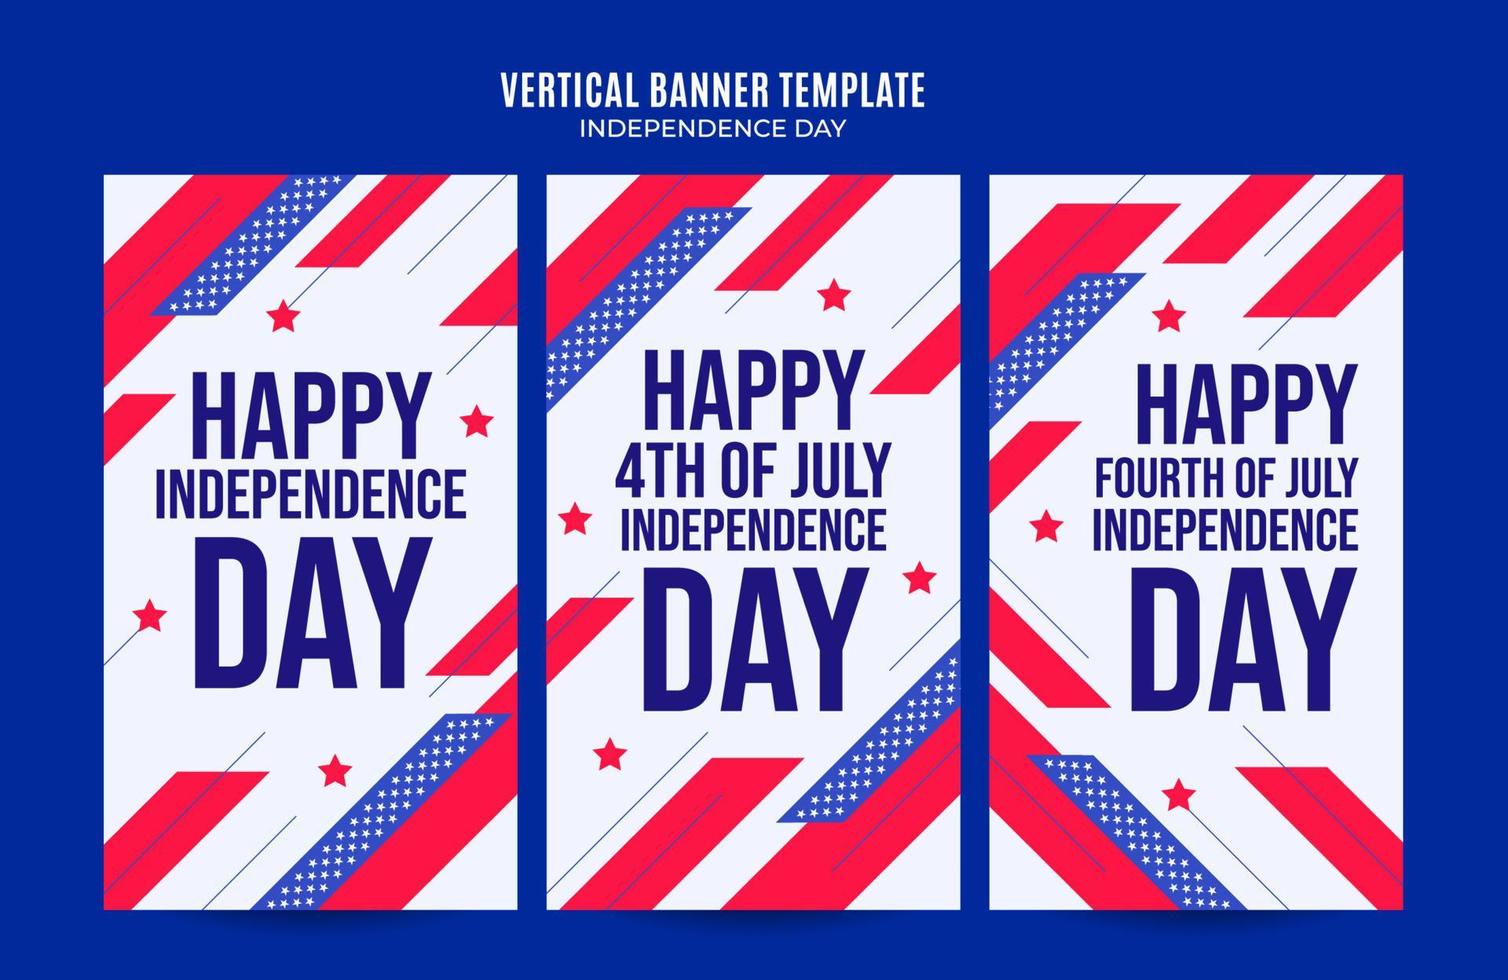 feliz 4 de julho - banner da web dos eua do dia da independência para pôster vertical de mídia social, banner, área espacial e plano de fundo vetor